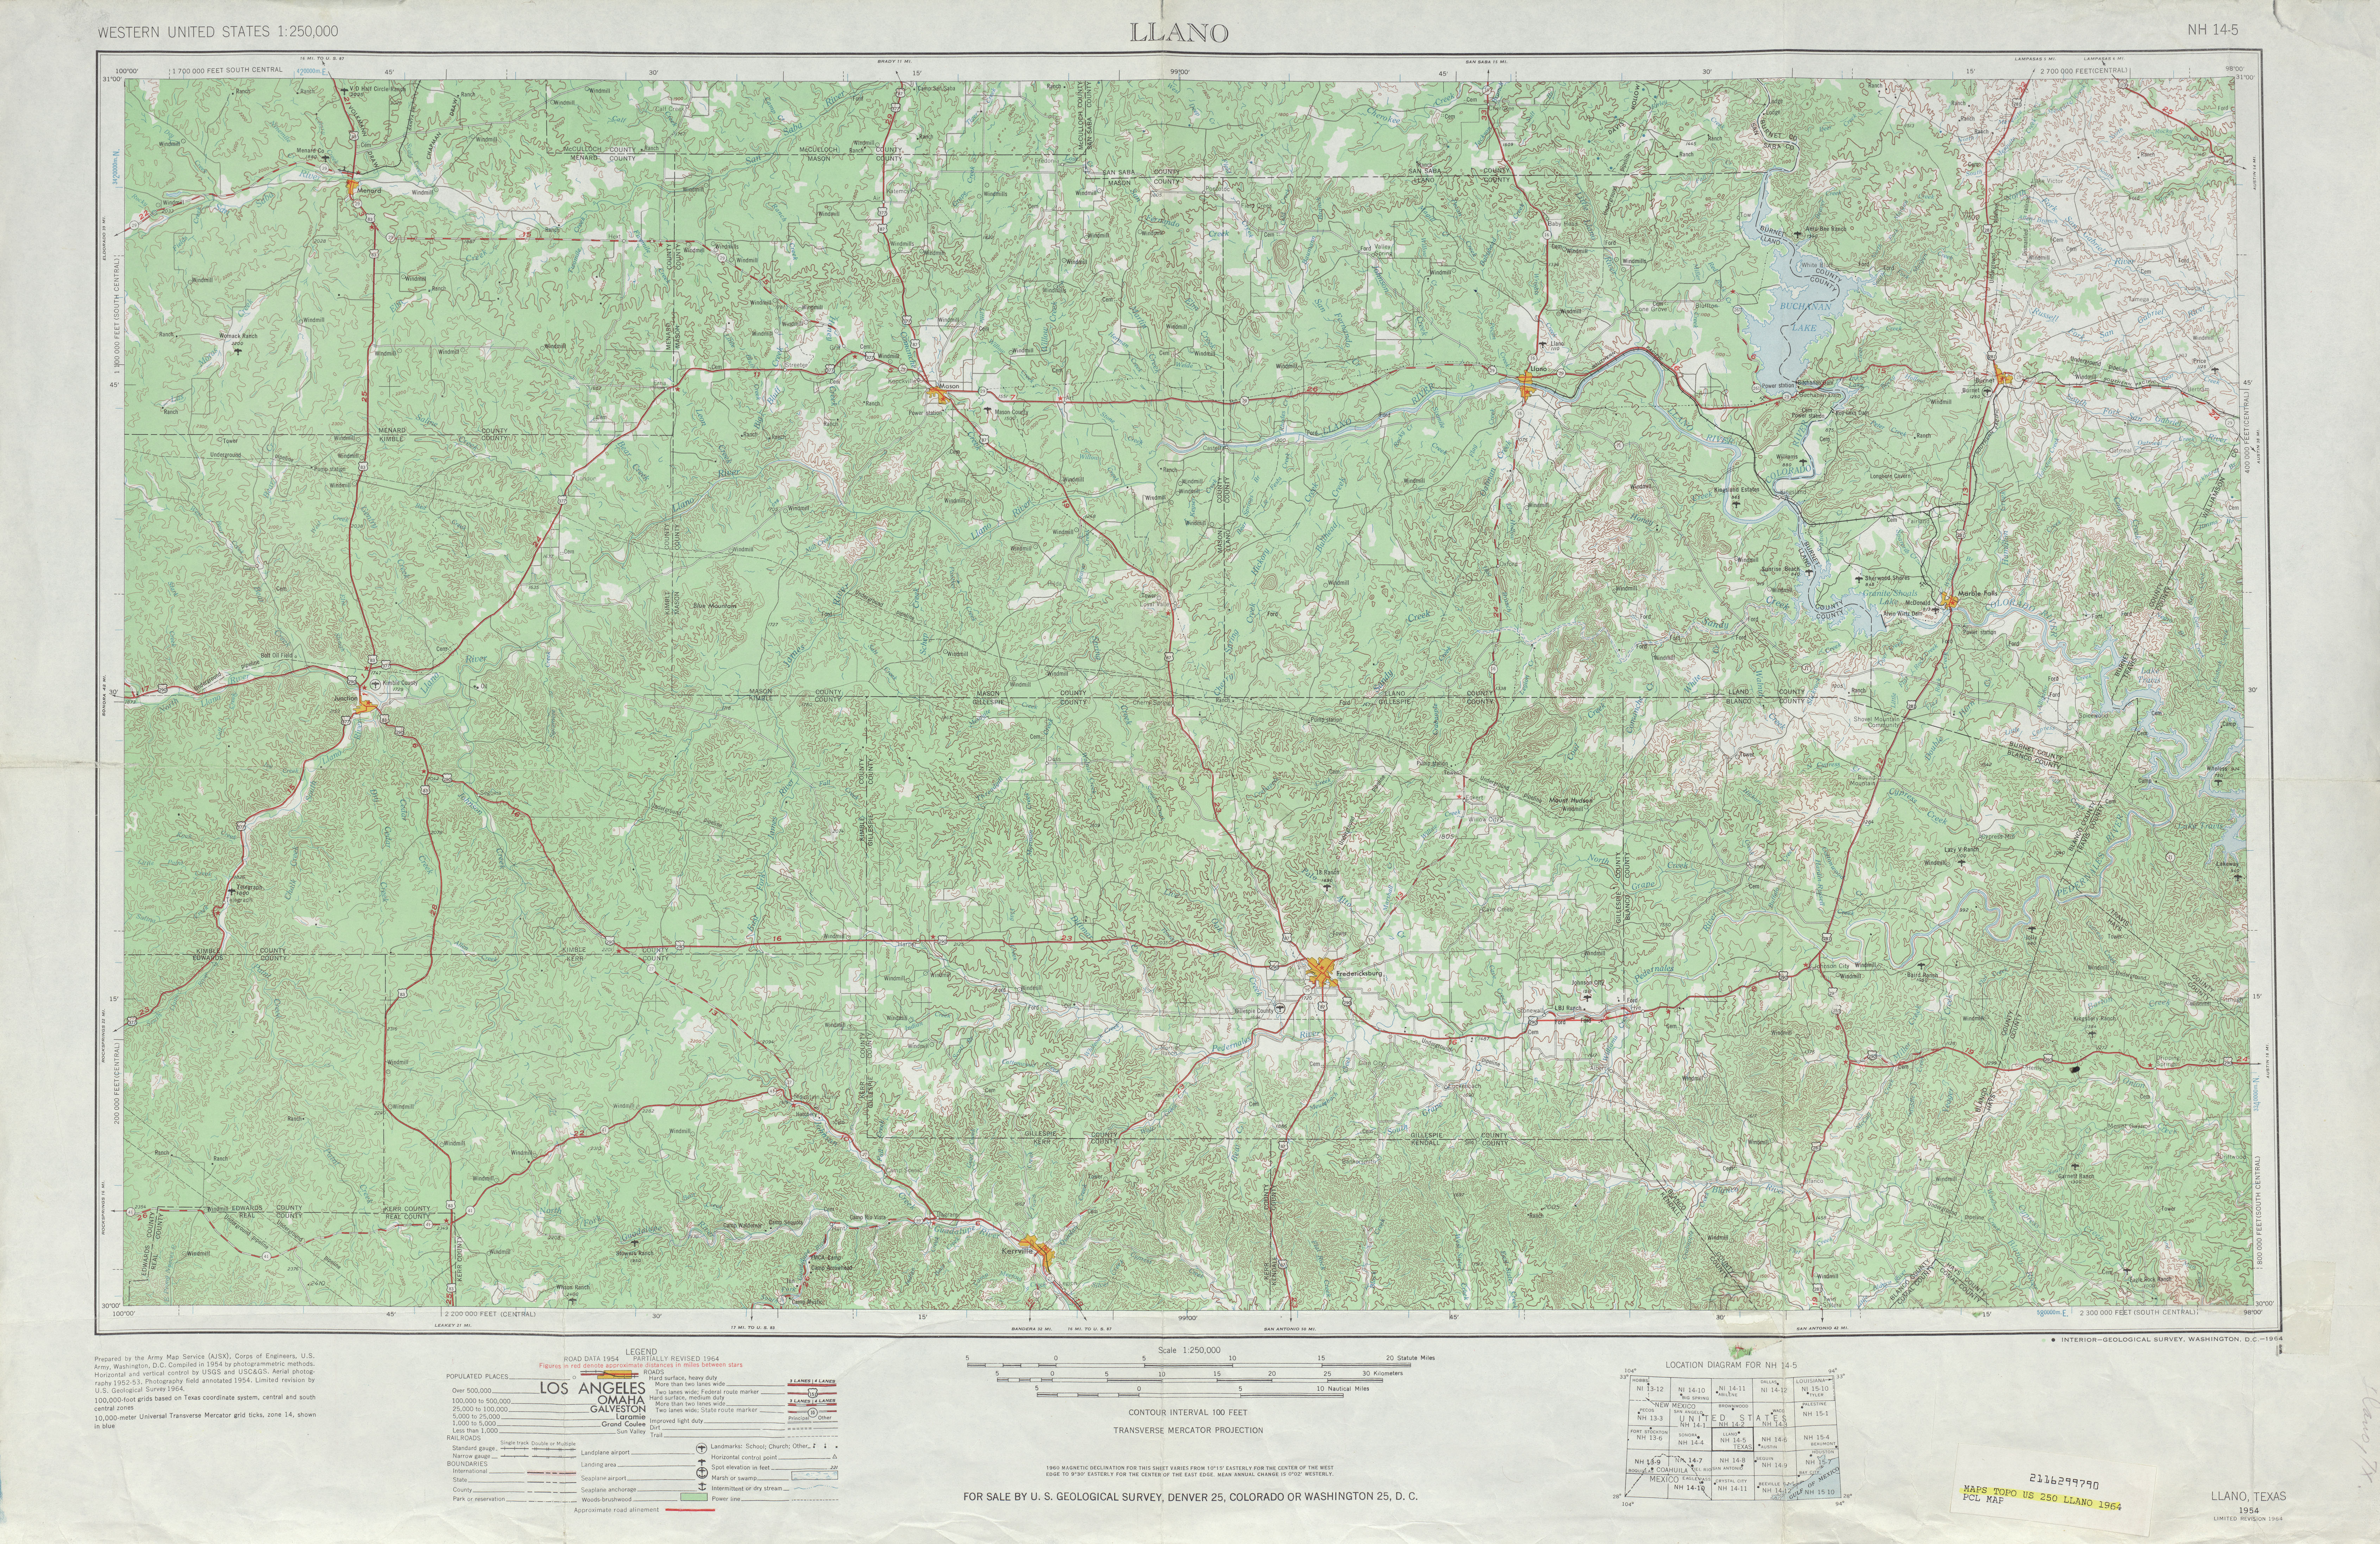 Hoja Llano del Mapa Topográfico de los Estados Unidos 1964